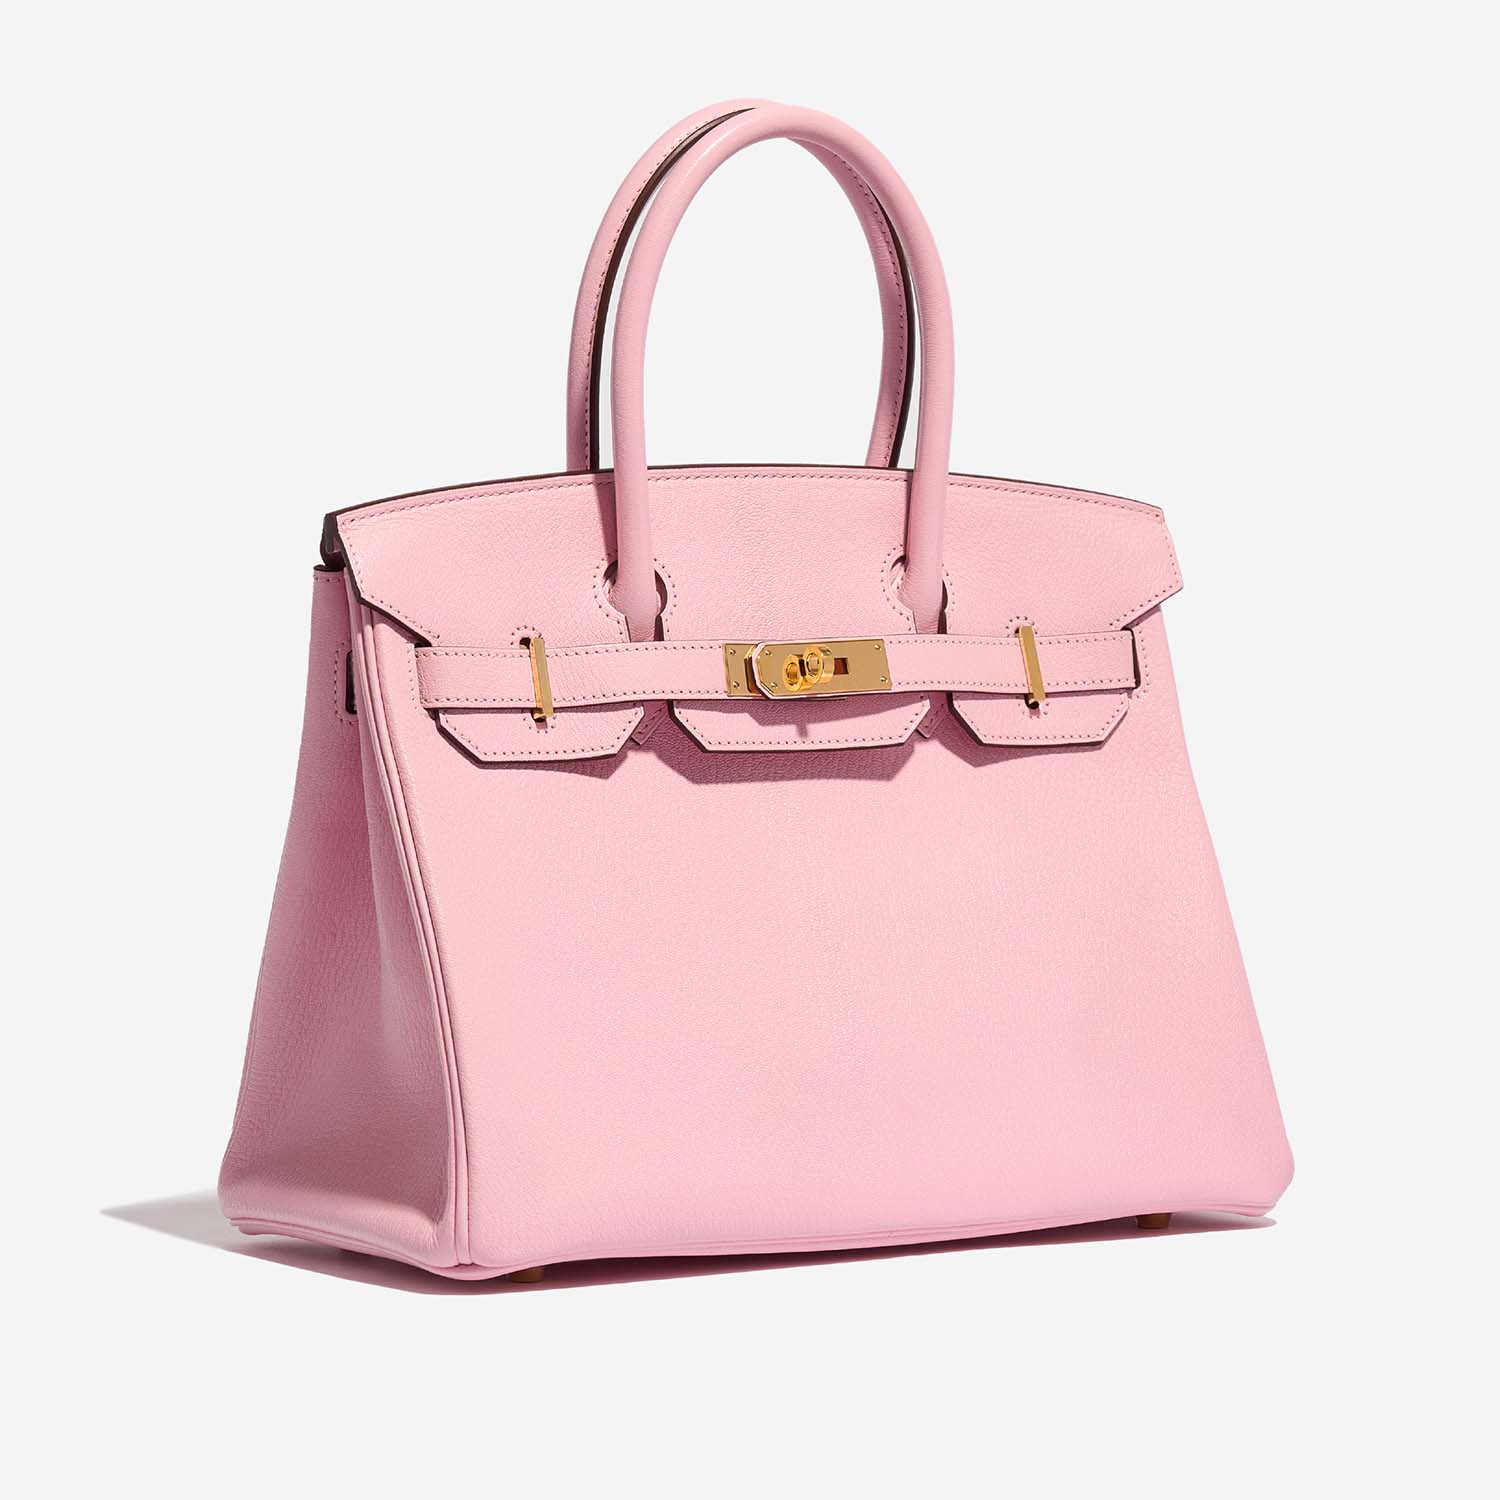 Hermès Birkin 30 roseSakura Side Front | Verkaufen Sie Ihre Designer-Tasche auf Saclab.com